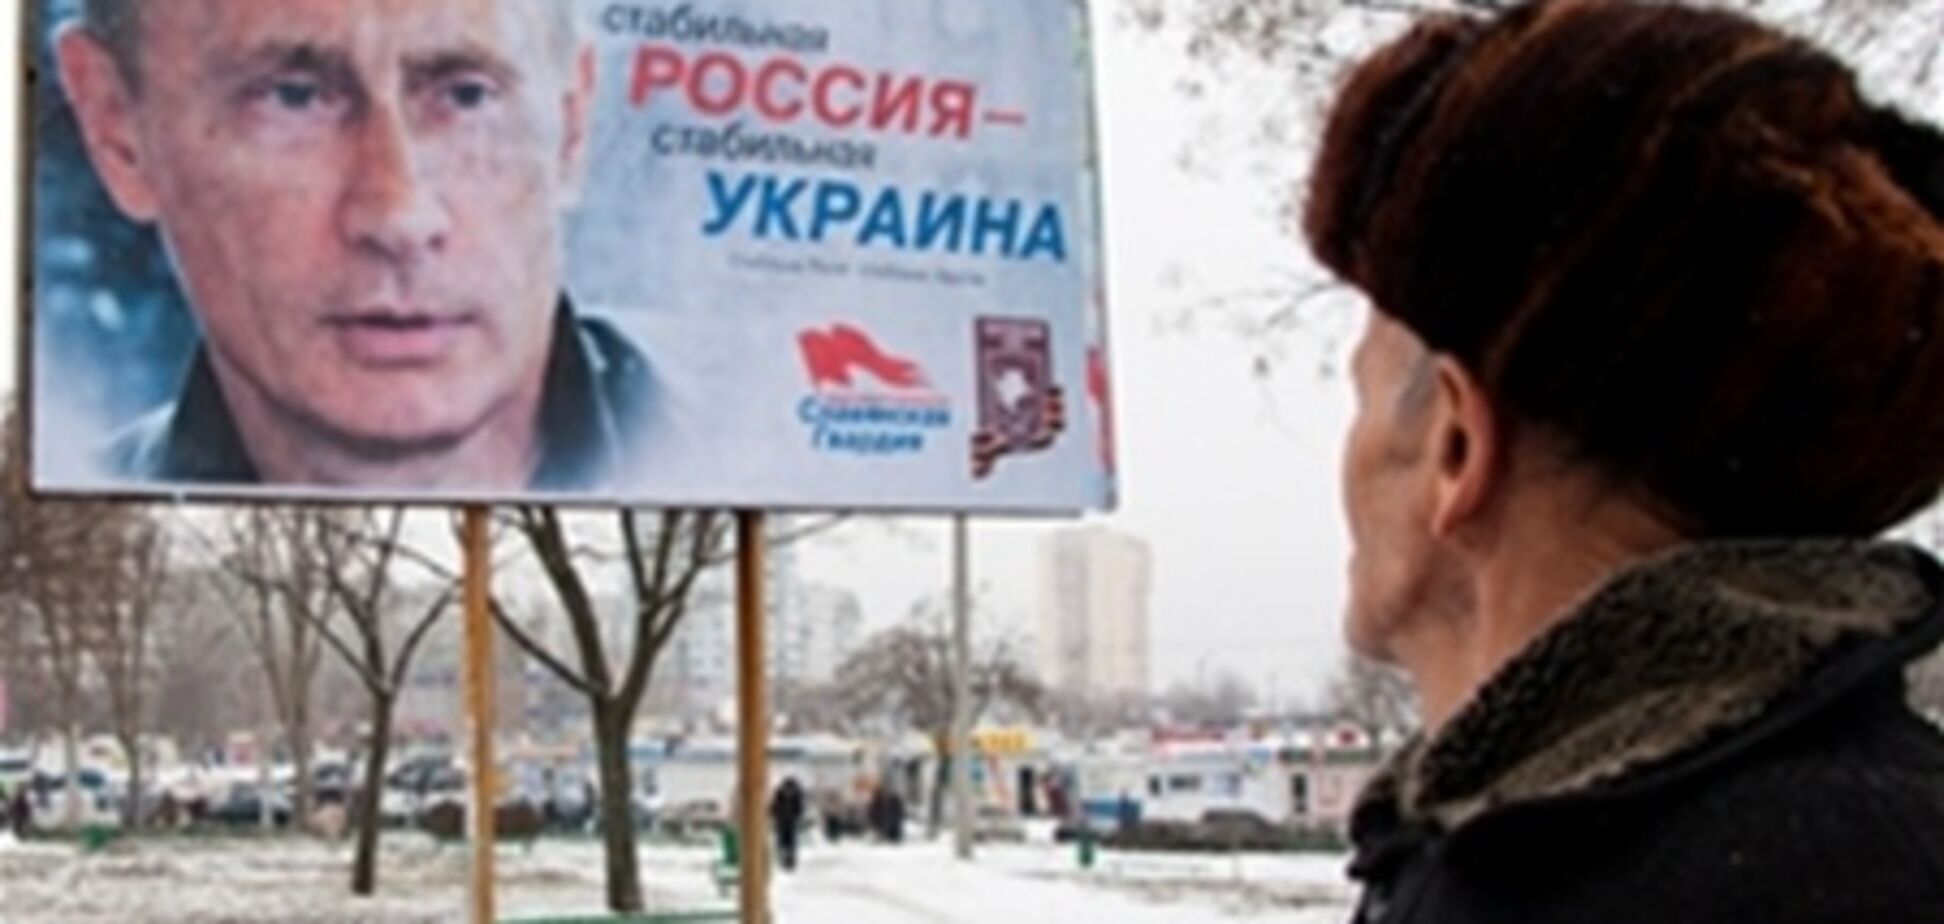 В Запорожье установили билборды с Путиным. Фото